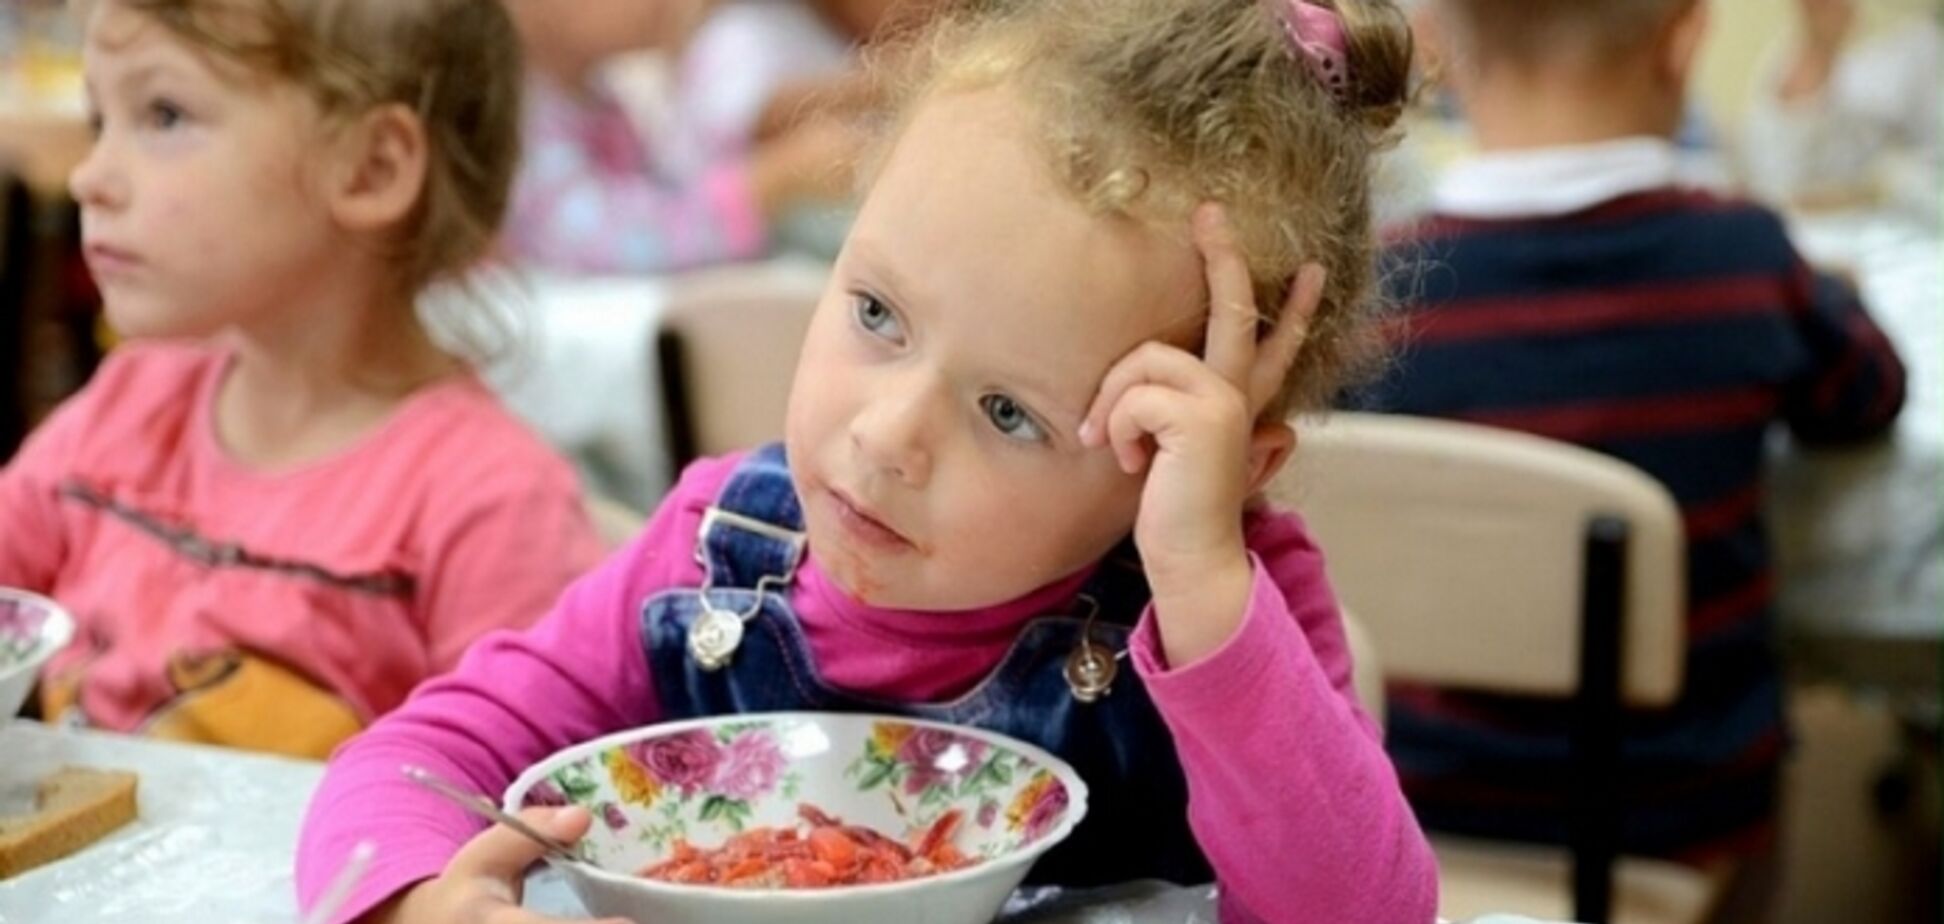 'Противно смотреть!' Украинцев возмутило питание детей в одной из киевских школ